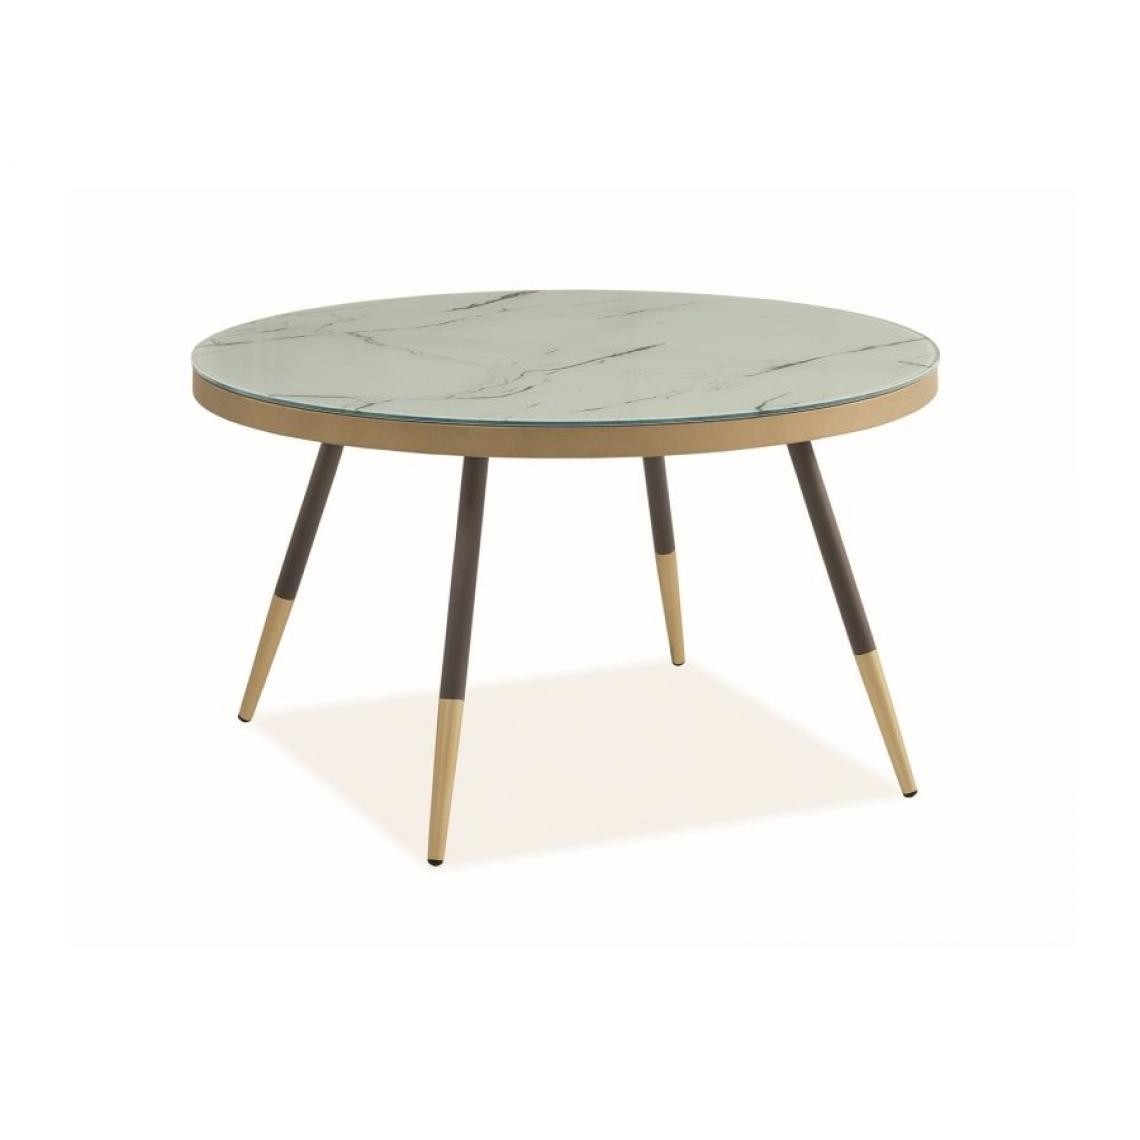 Hucoco - VEHA - Table basse ronde pour salon - 45x80x80 cm - Plateau en verre effet marbre - Pieds en métal - Table à café - Blanc - Tables d'appoint